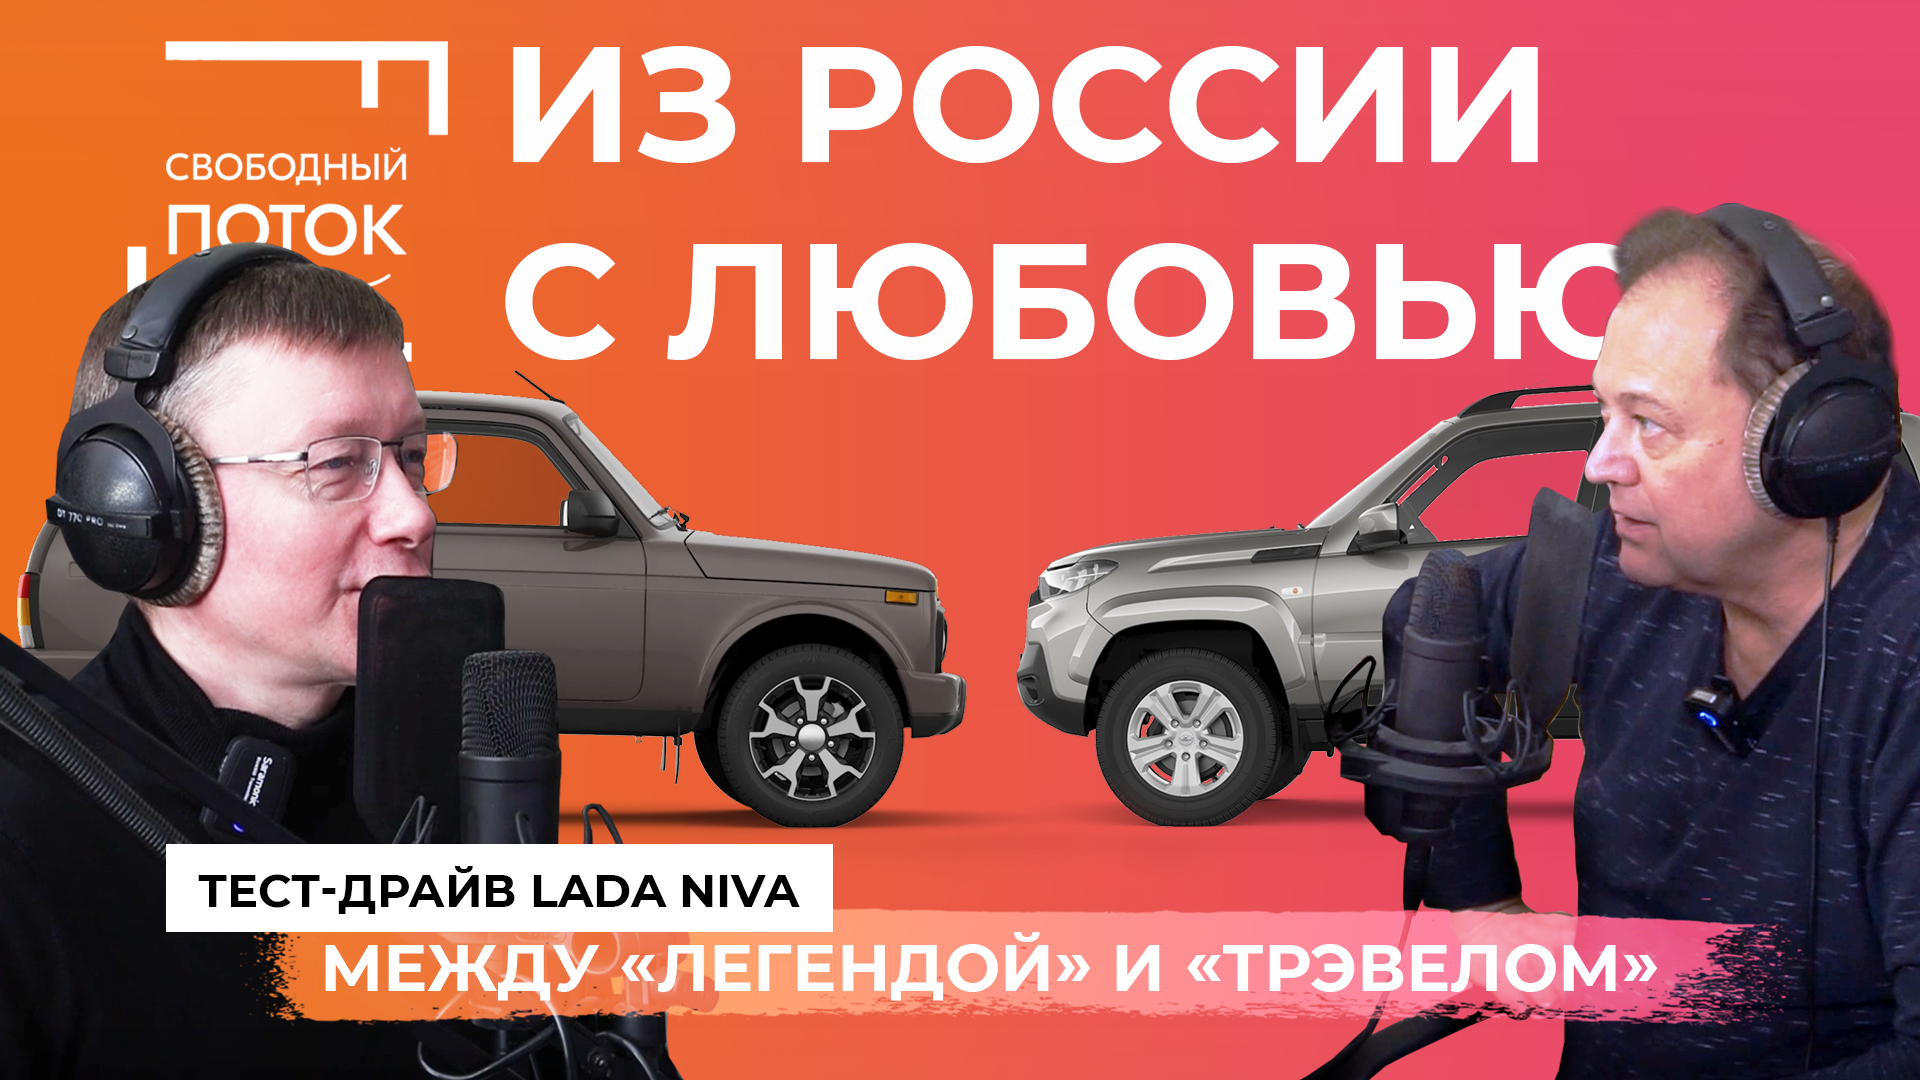 Свободный поток. Тест-драйв Lada Niva: между «Легендой» и «Трэвелом». Из России с любовью.